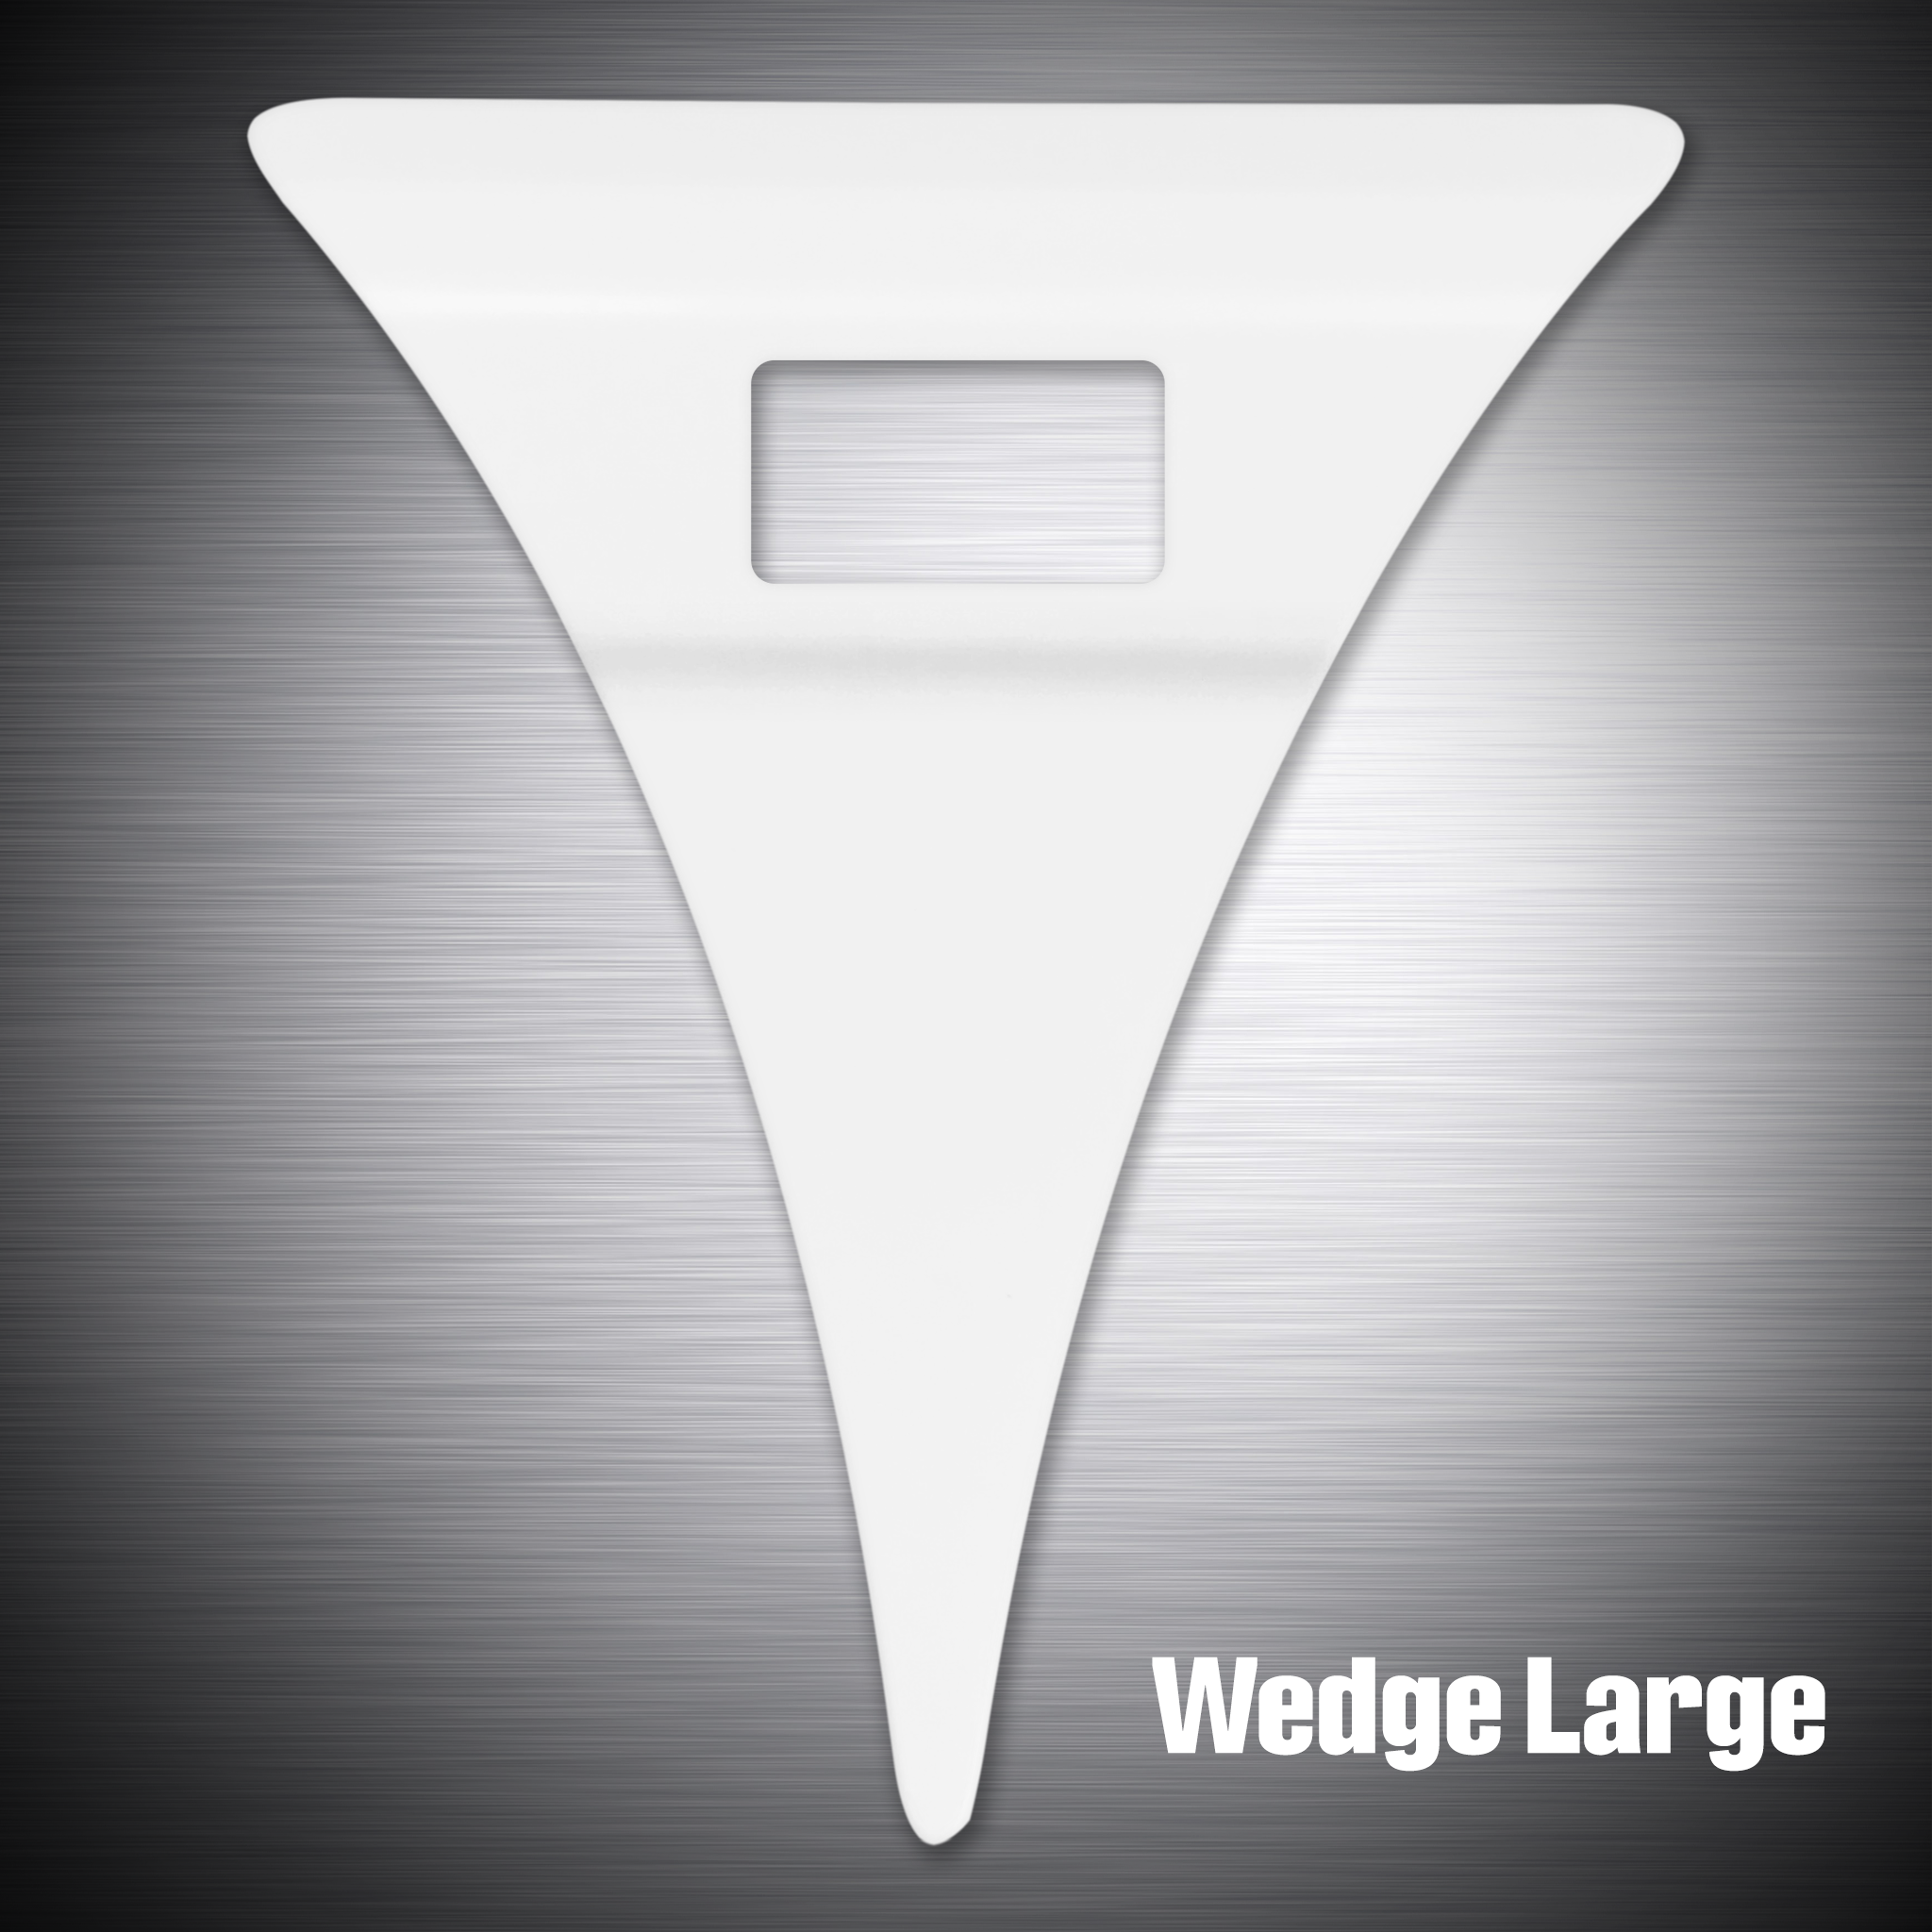 Wedge Large prepared for - Original side marking light